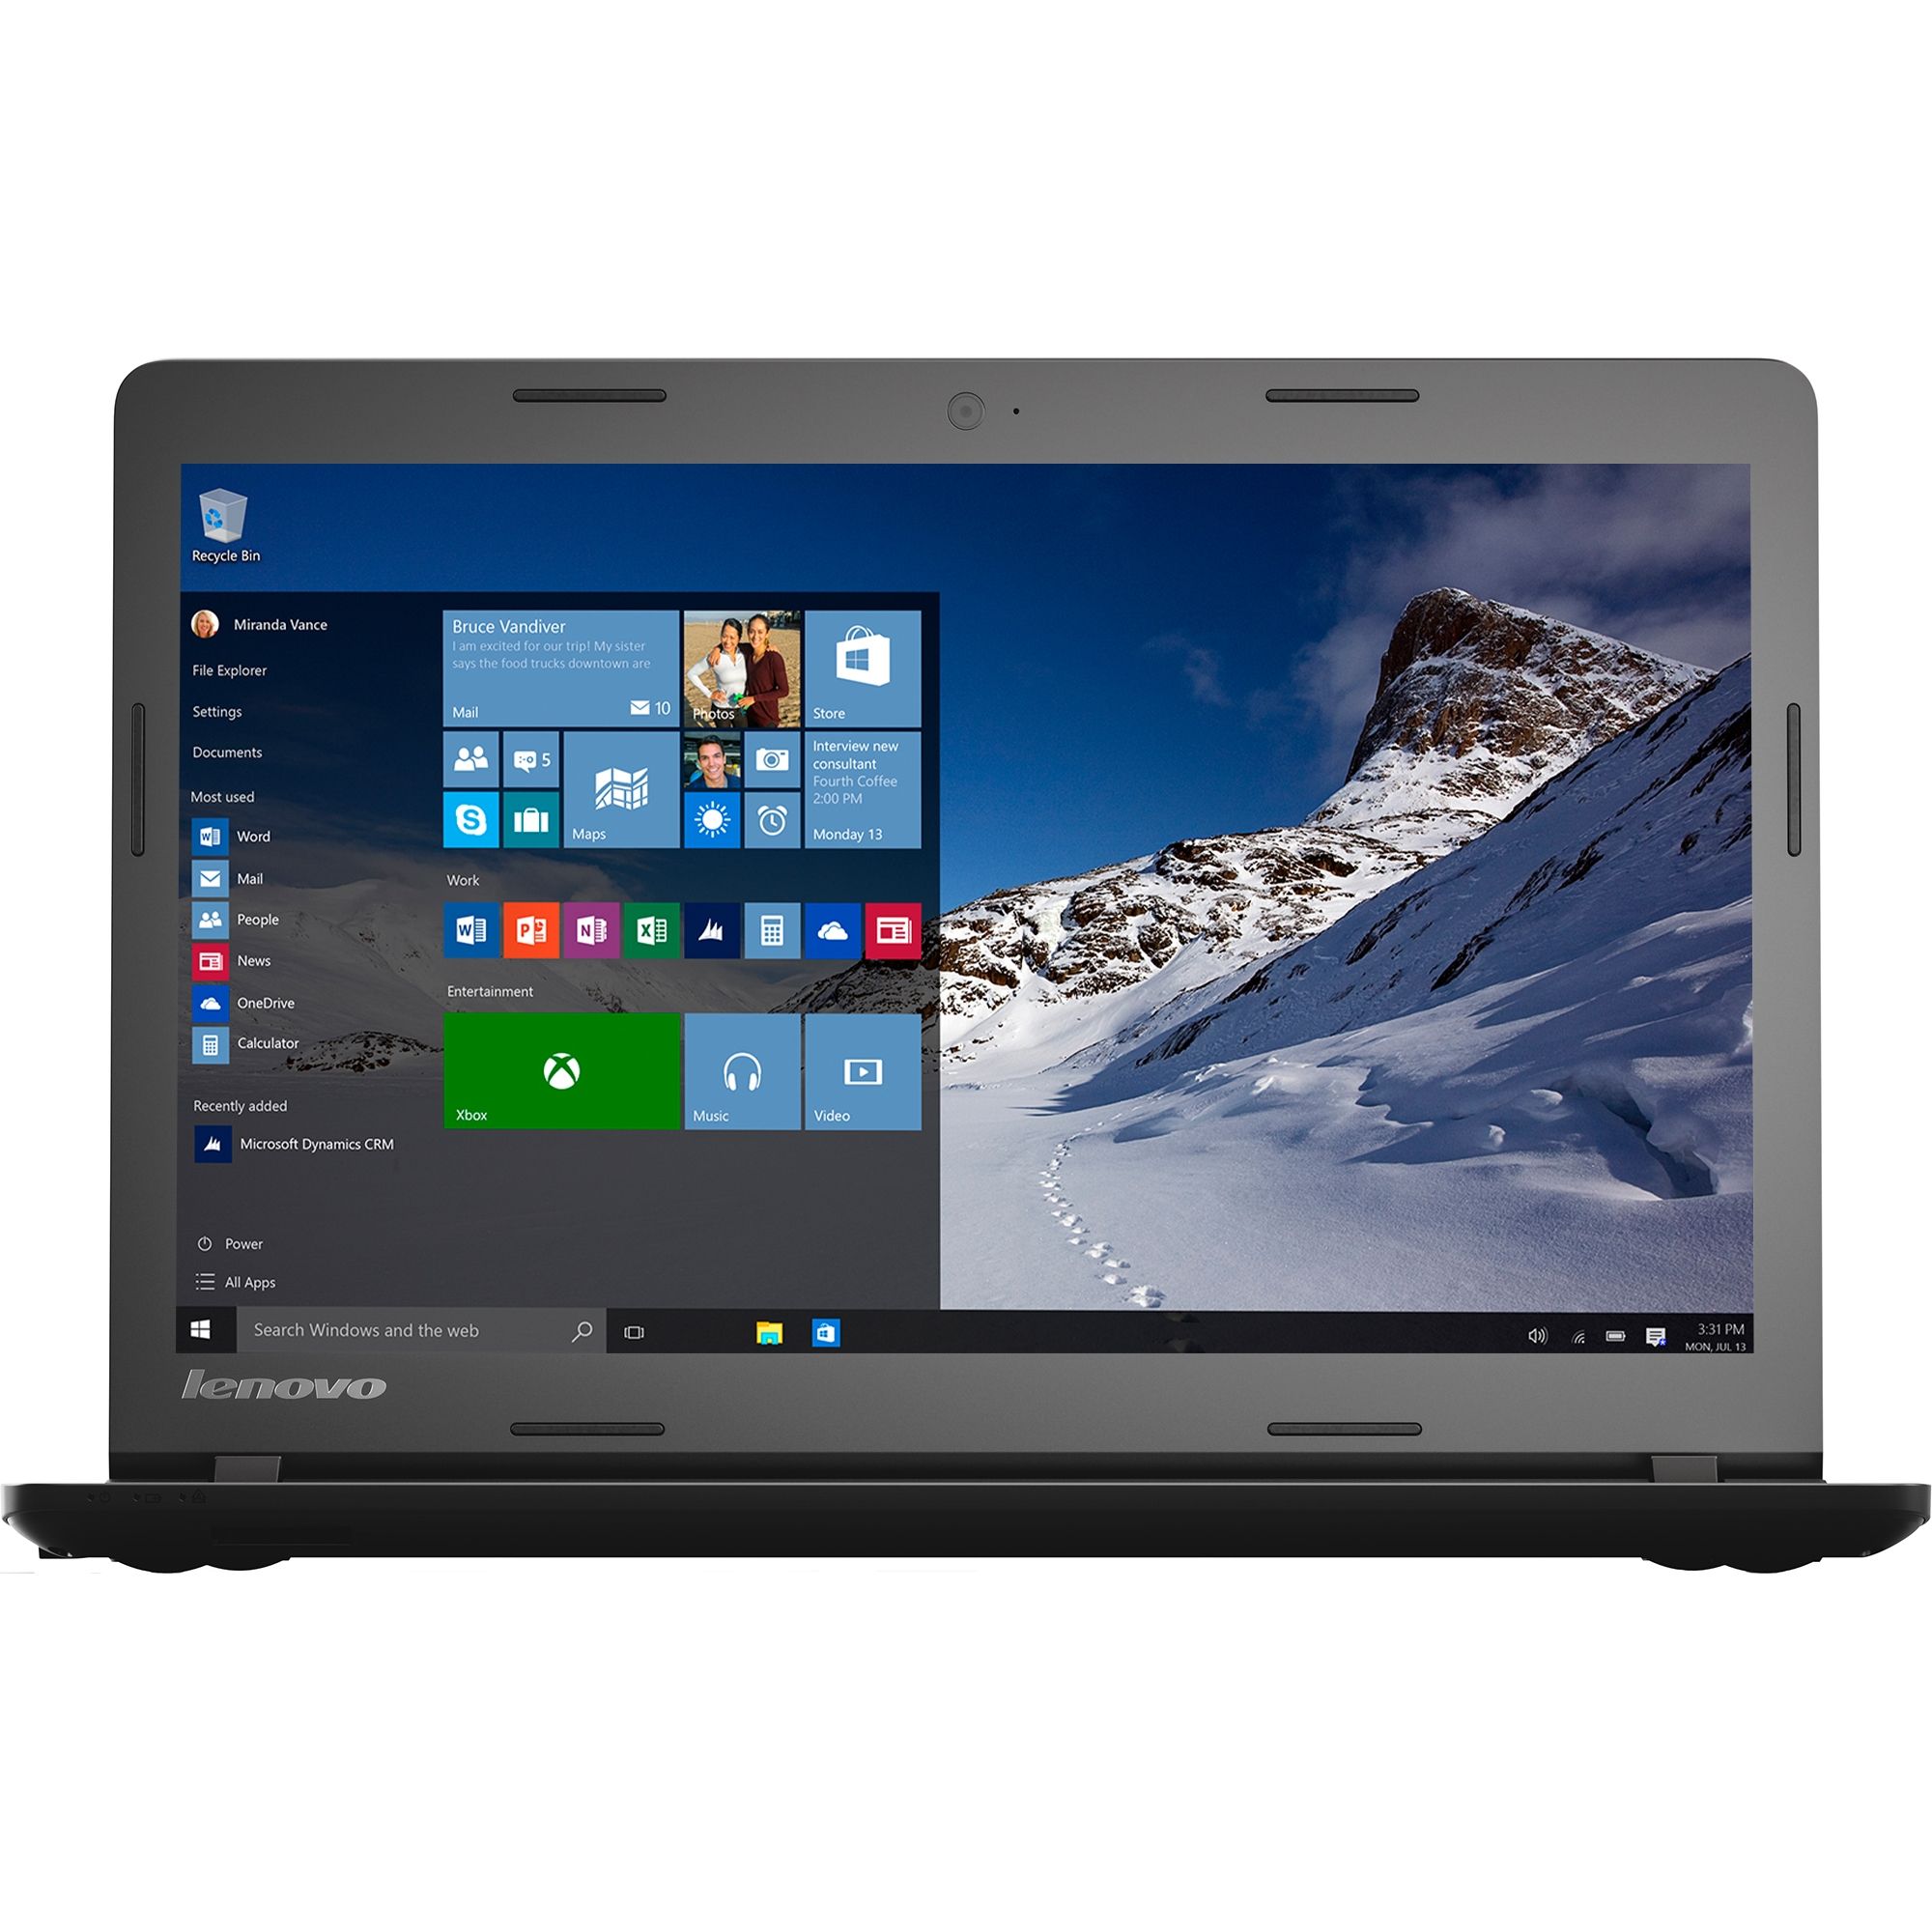 Laptop Lenovo IdeaPad 100, Intel Celeron N2840, 2GB DDR3, HDD 500GB, Intel HD Graphics, Windows 10